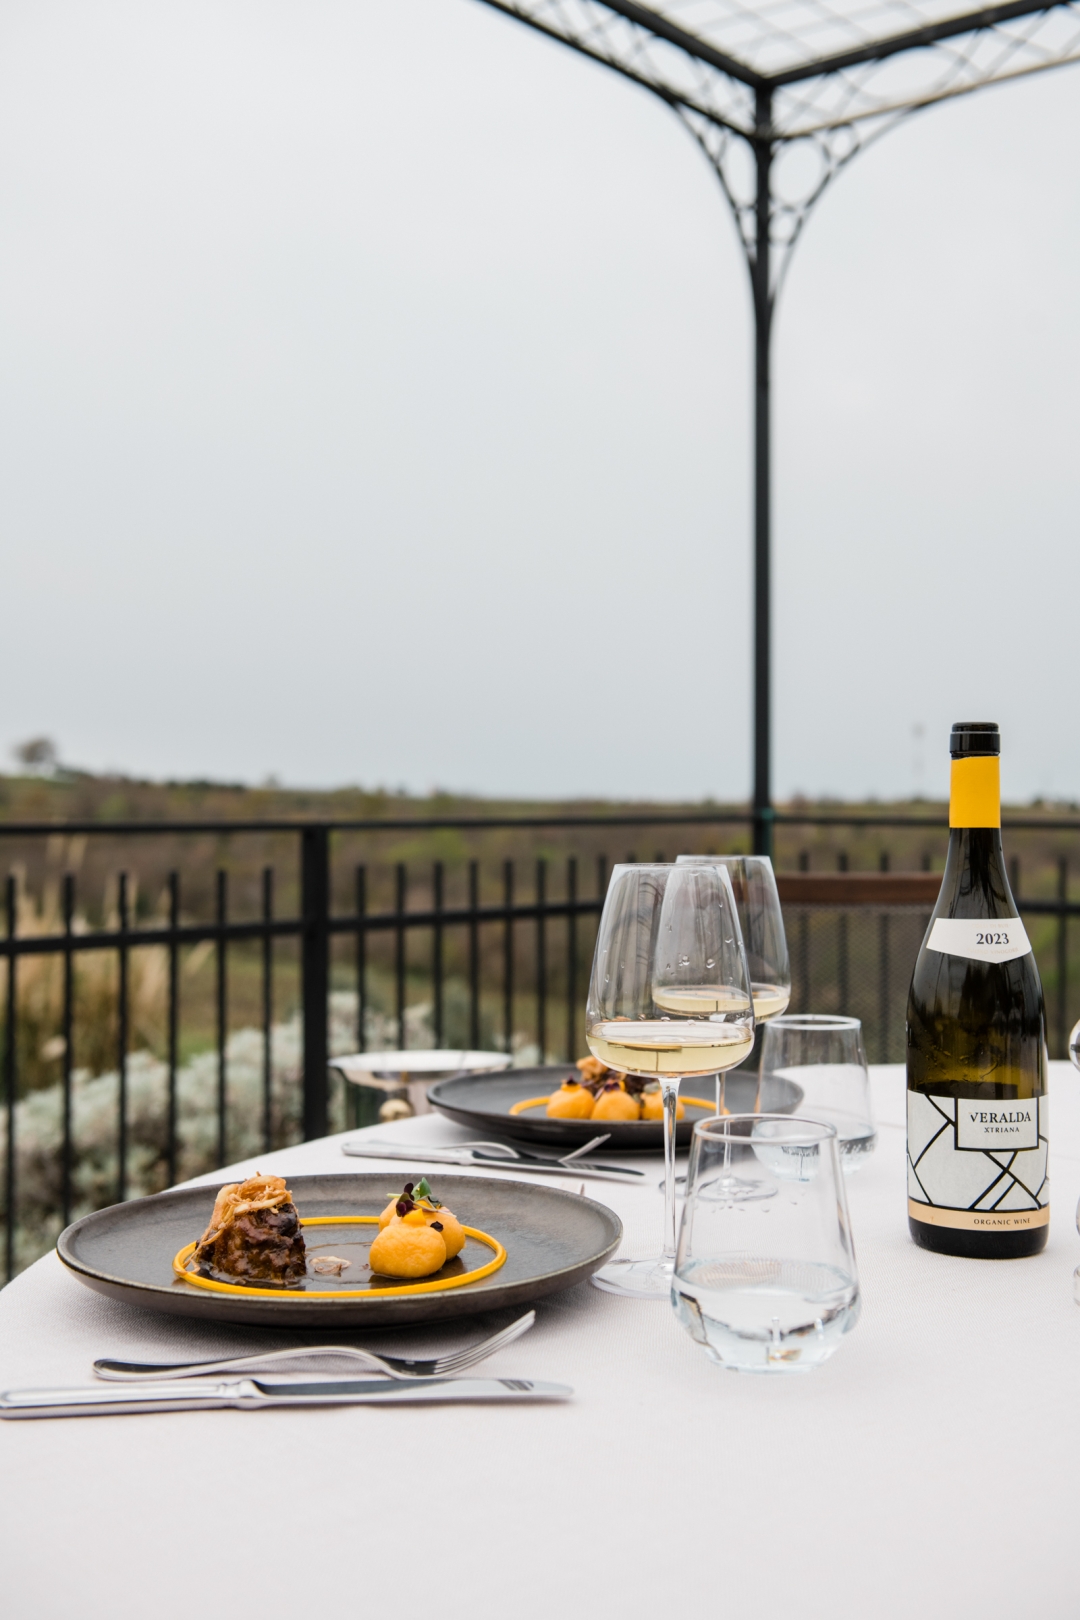 Konobu Morgan posjetili smo zbog odlične hrane i spektakularne terase s pogledom na istarske vinograde